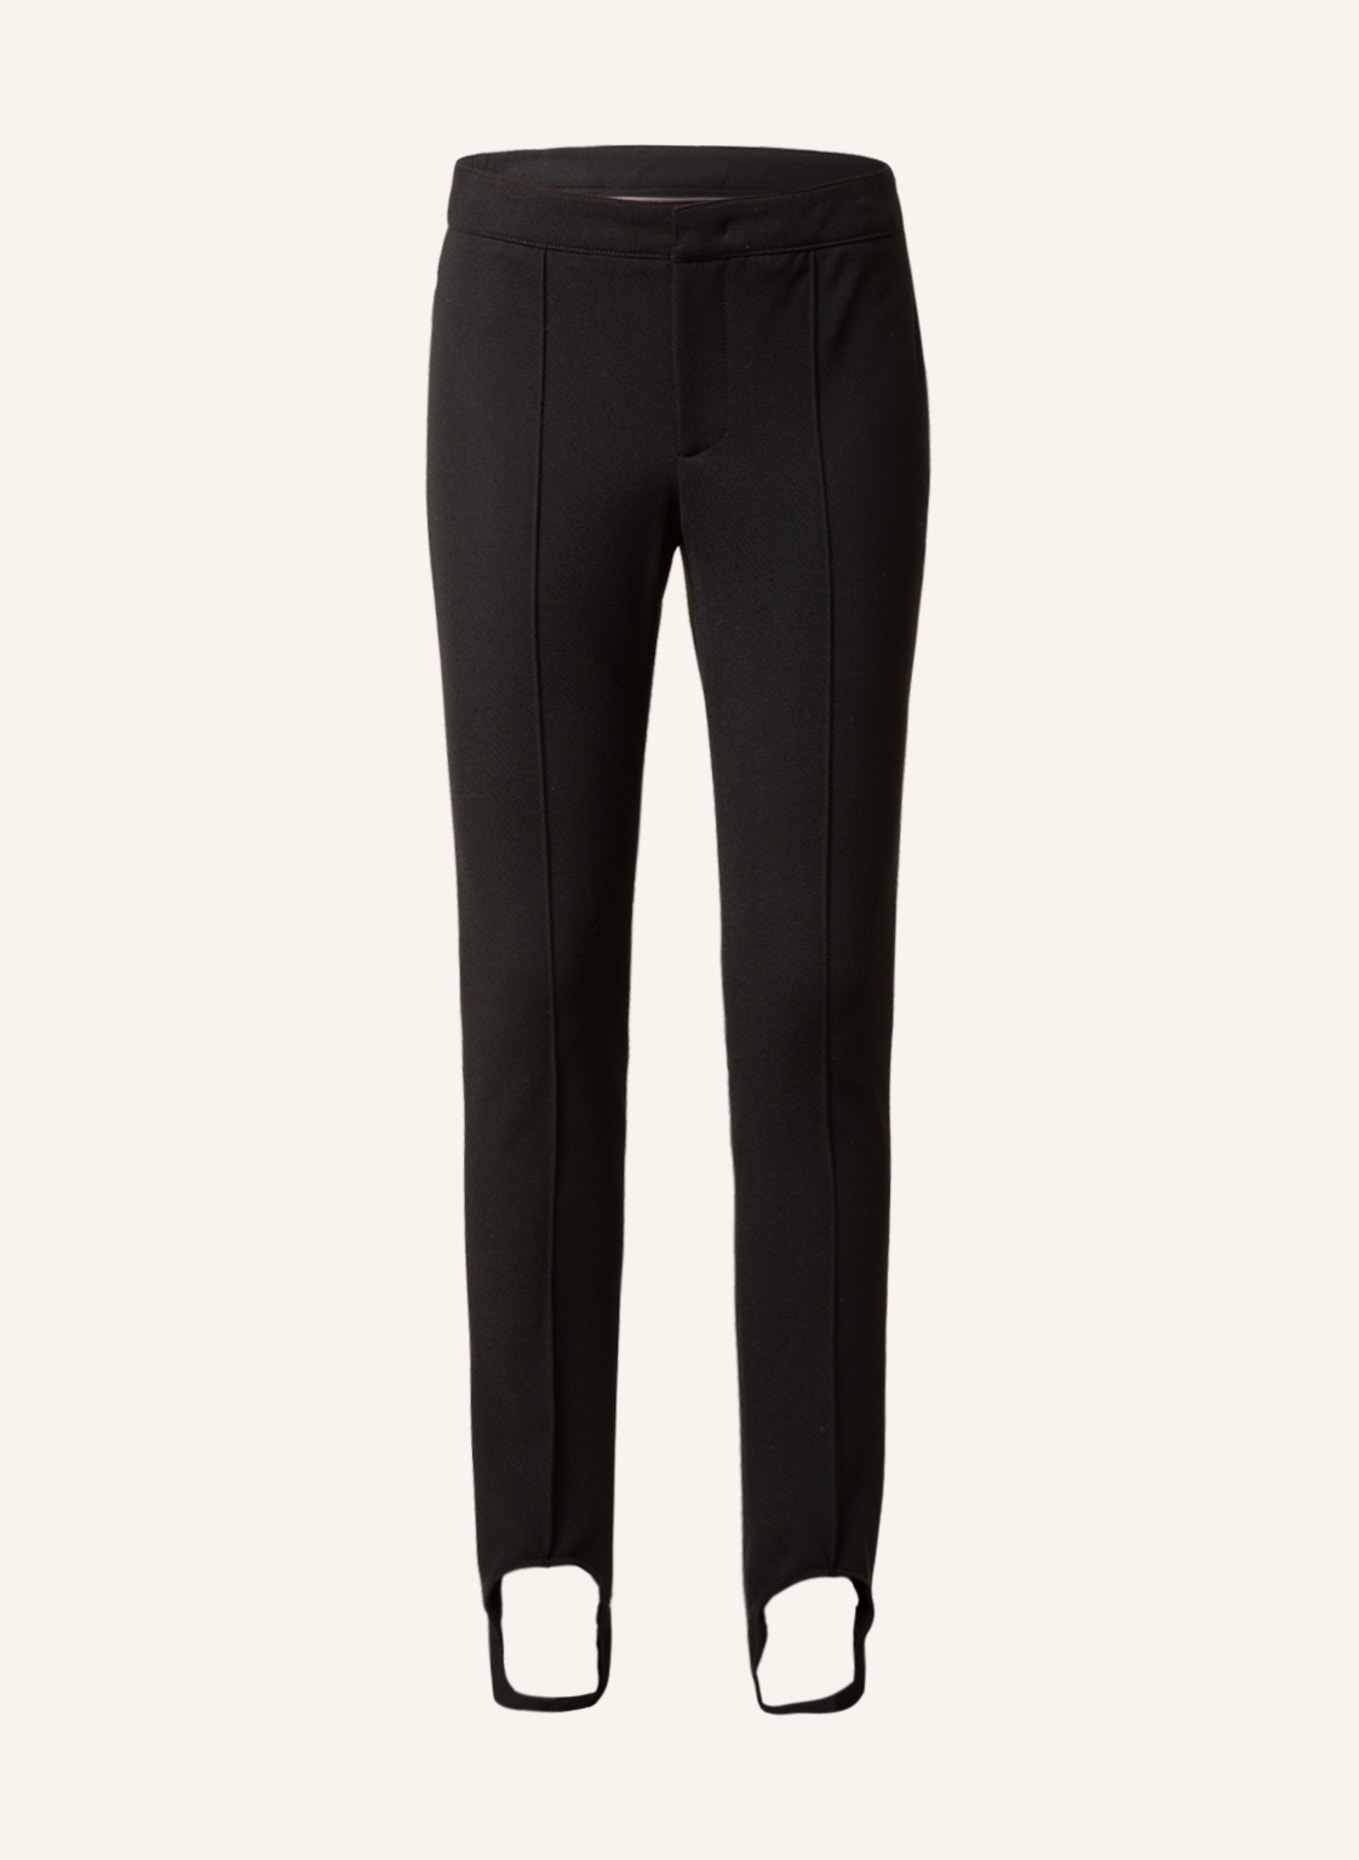 MONCLER GRENOBLE Stirrup ski pants, Color: BLACK (Image 1)